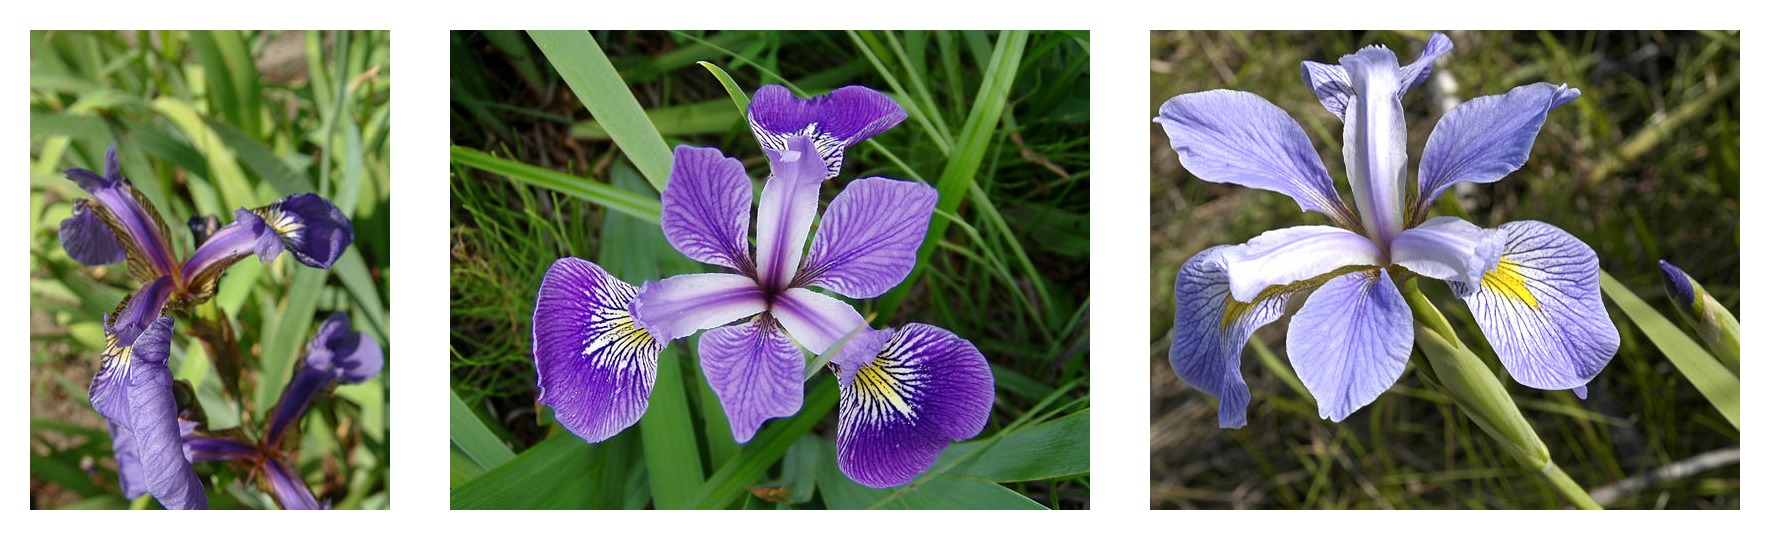 三种鸢尾花呈现出的不同花瓣花萼外形